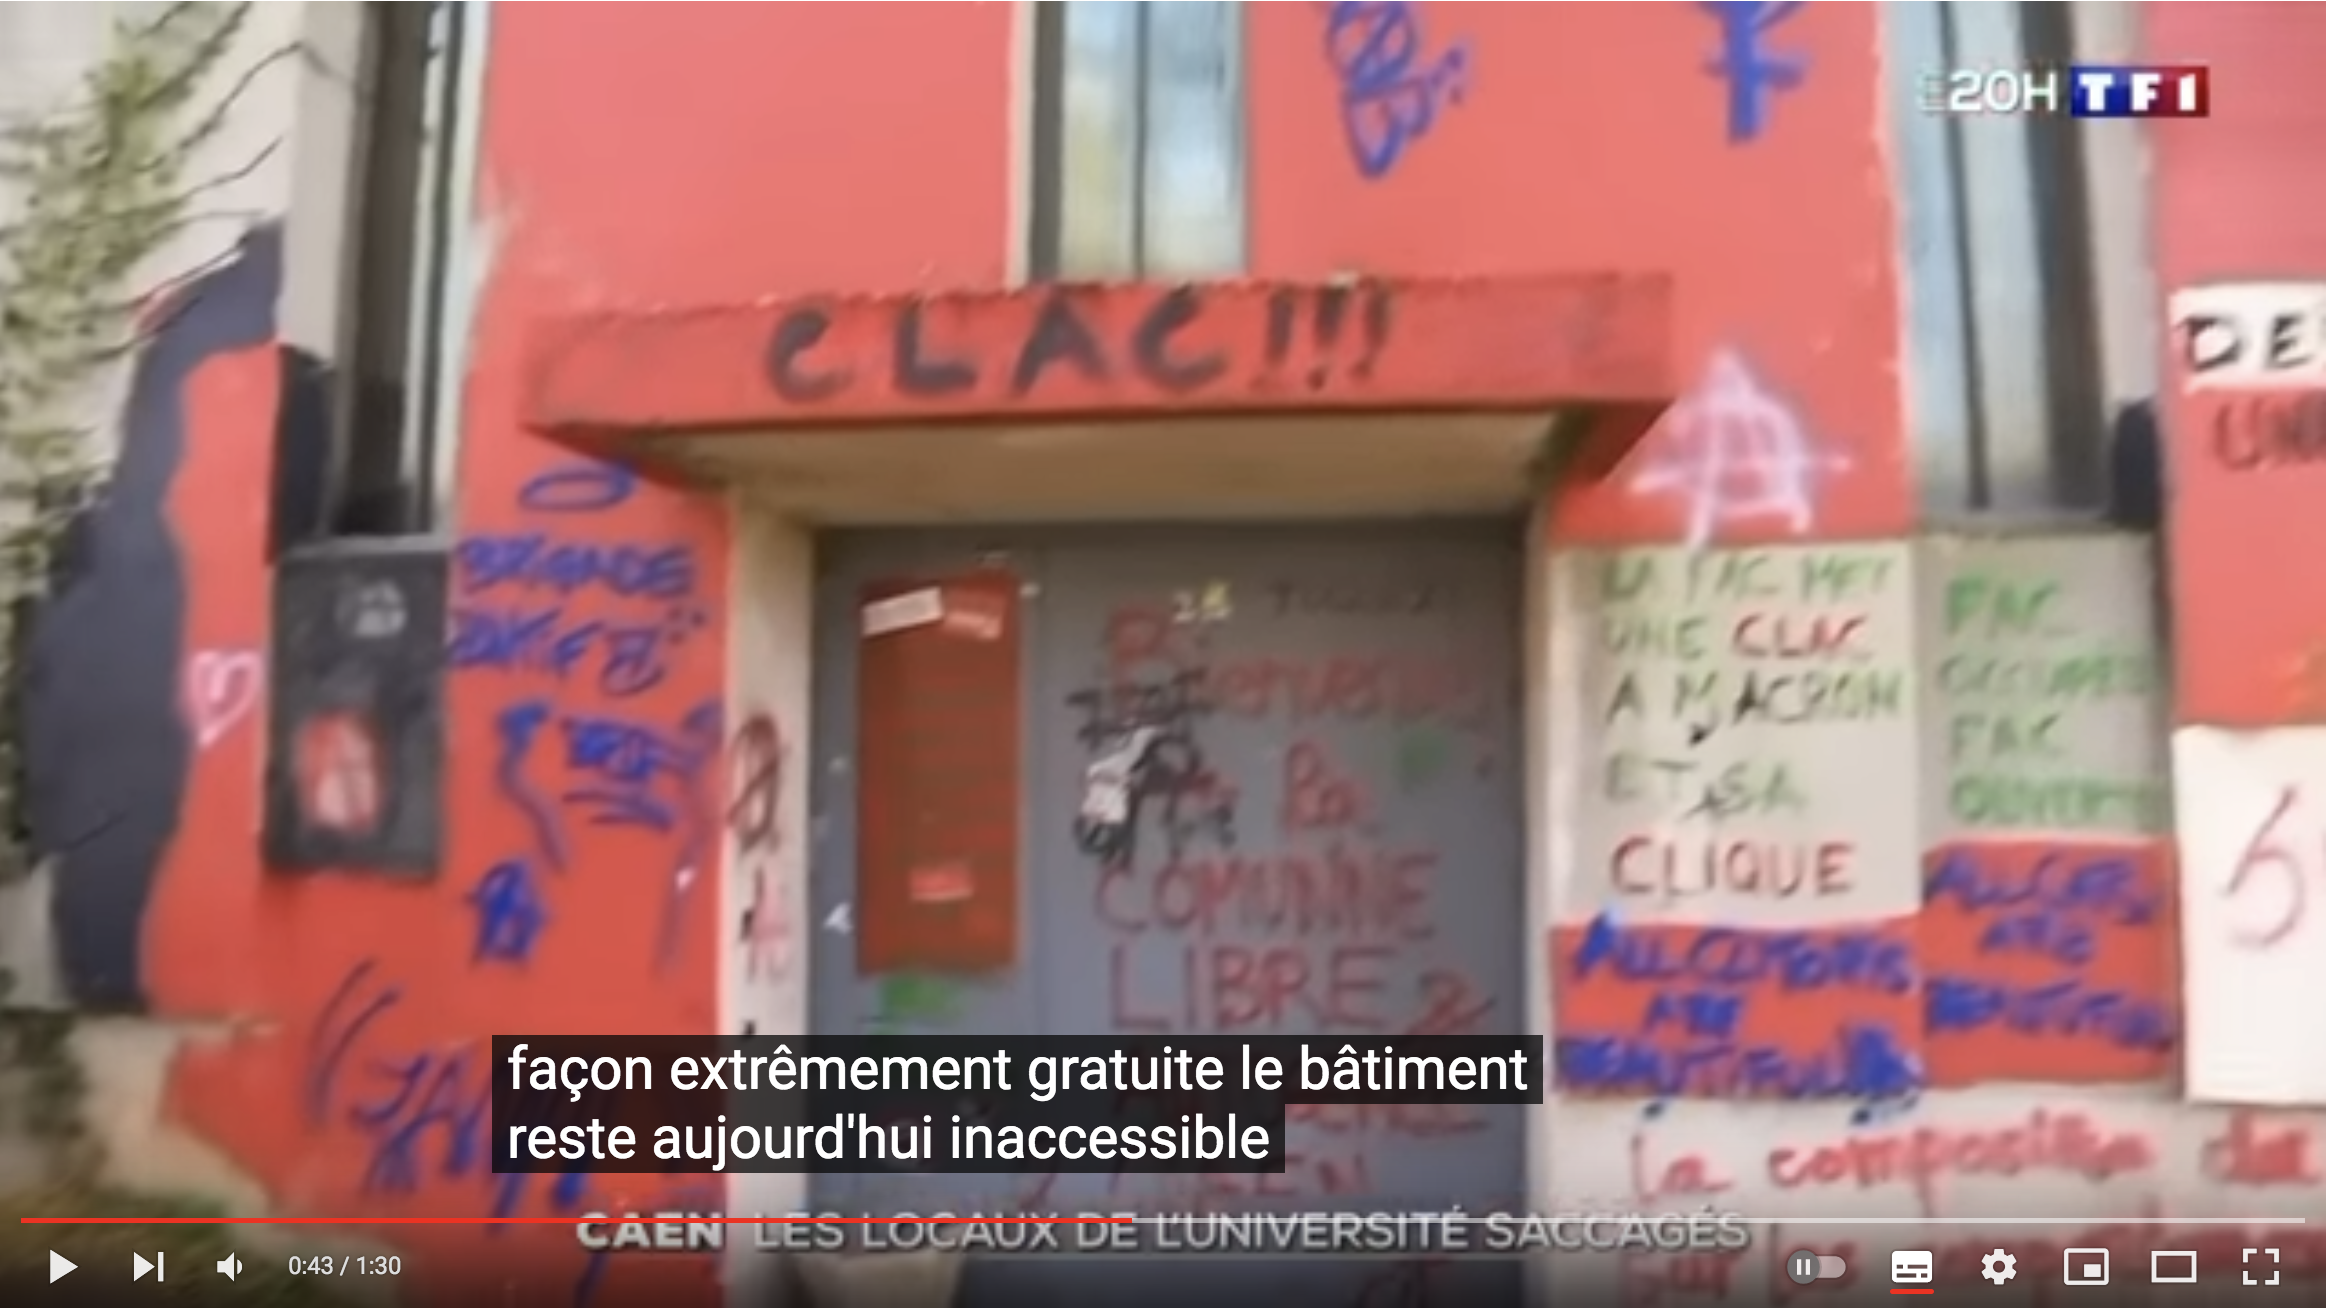 L’impressionnant saccage de l’université de Caen, occupée pendant 6 semaines par des extrémistes de gauche (VIDÉO)